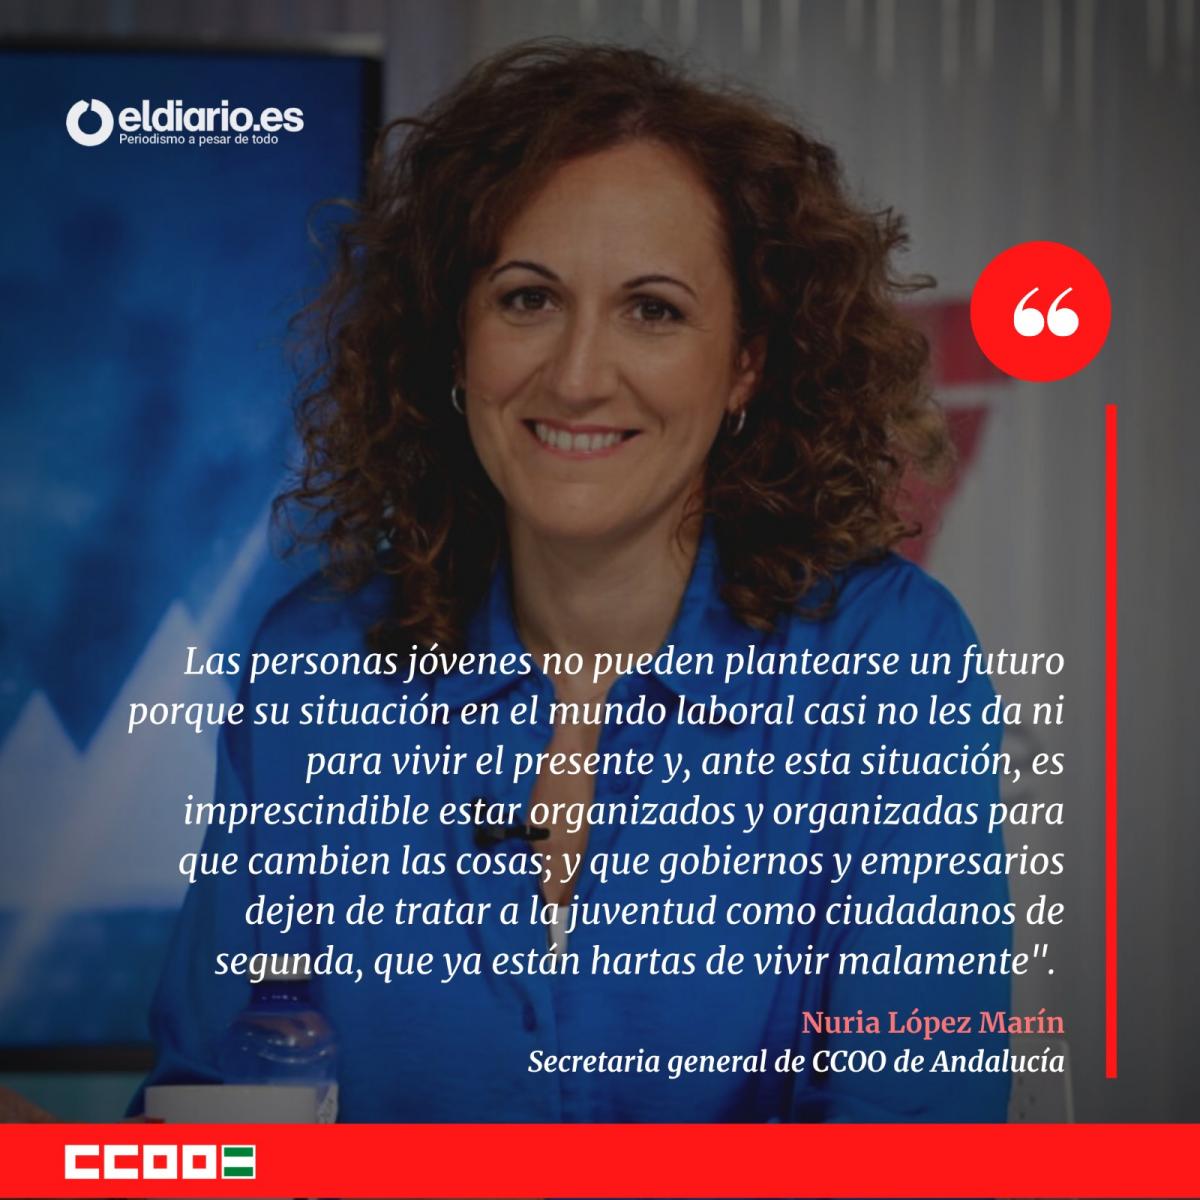 Nuria Lpez Marn, secretaria general de CCOO de Andaluca en el diario.es